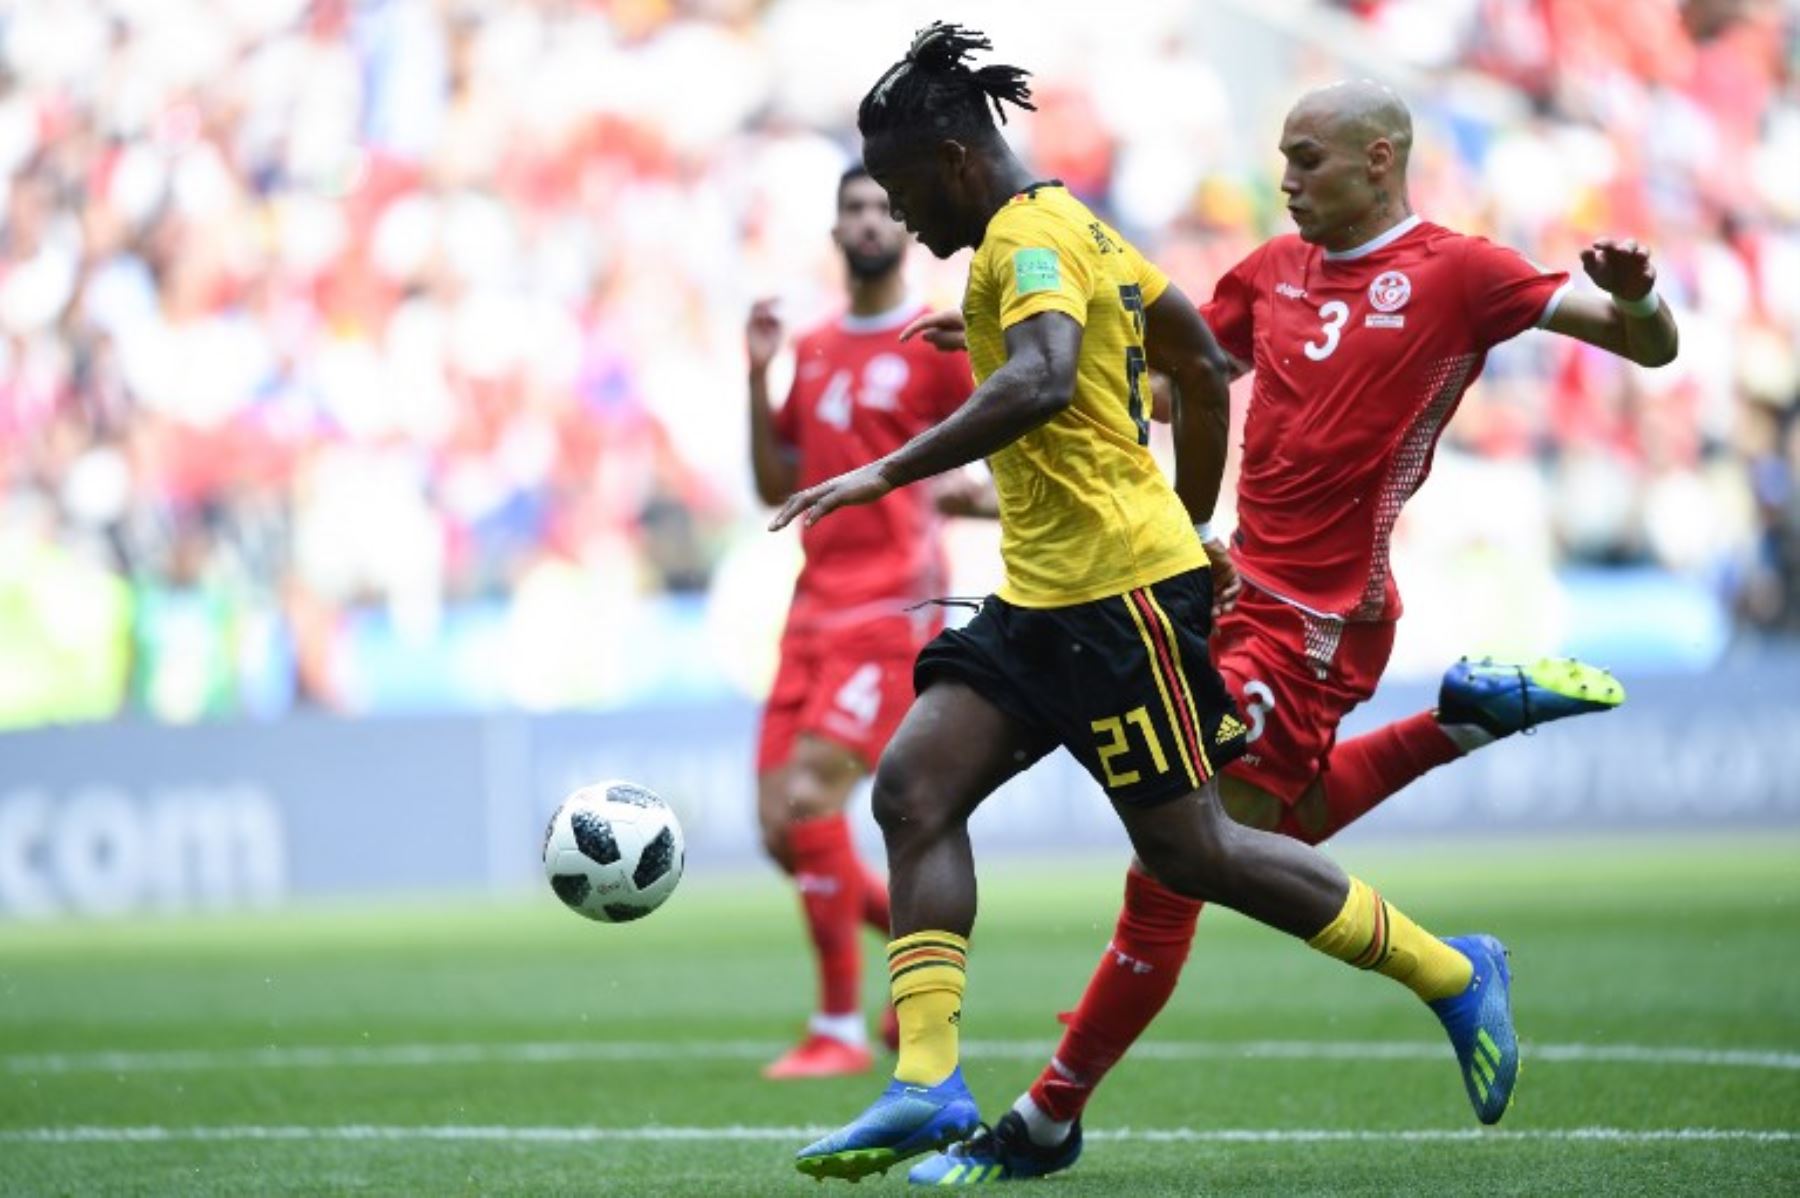 El delantero belga Michy Batshuayi compite con el defensor Yohan Benalouane de Túnez durante el partido de fútbol del Grupo G de la Copa Mundial Rusia 2018 entre Bélgica y Túnez.Foto:AFP